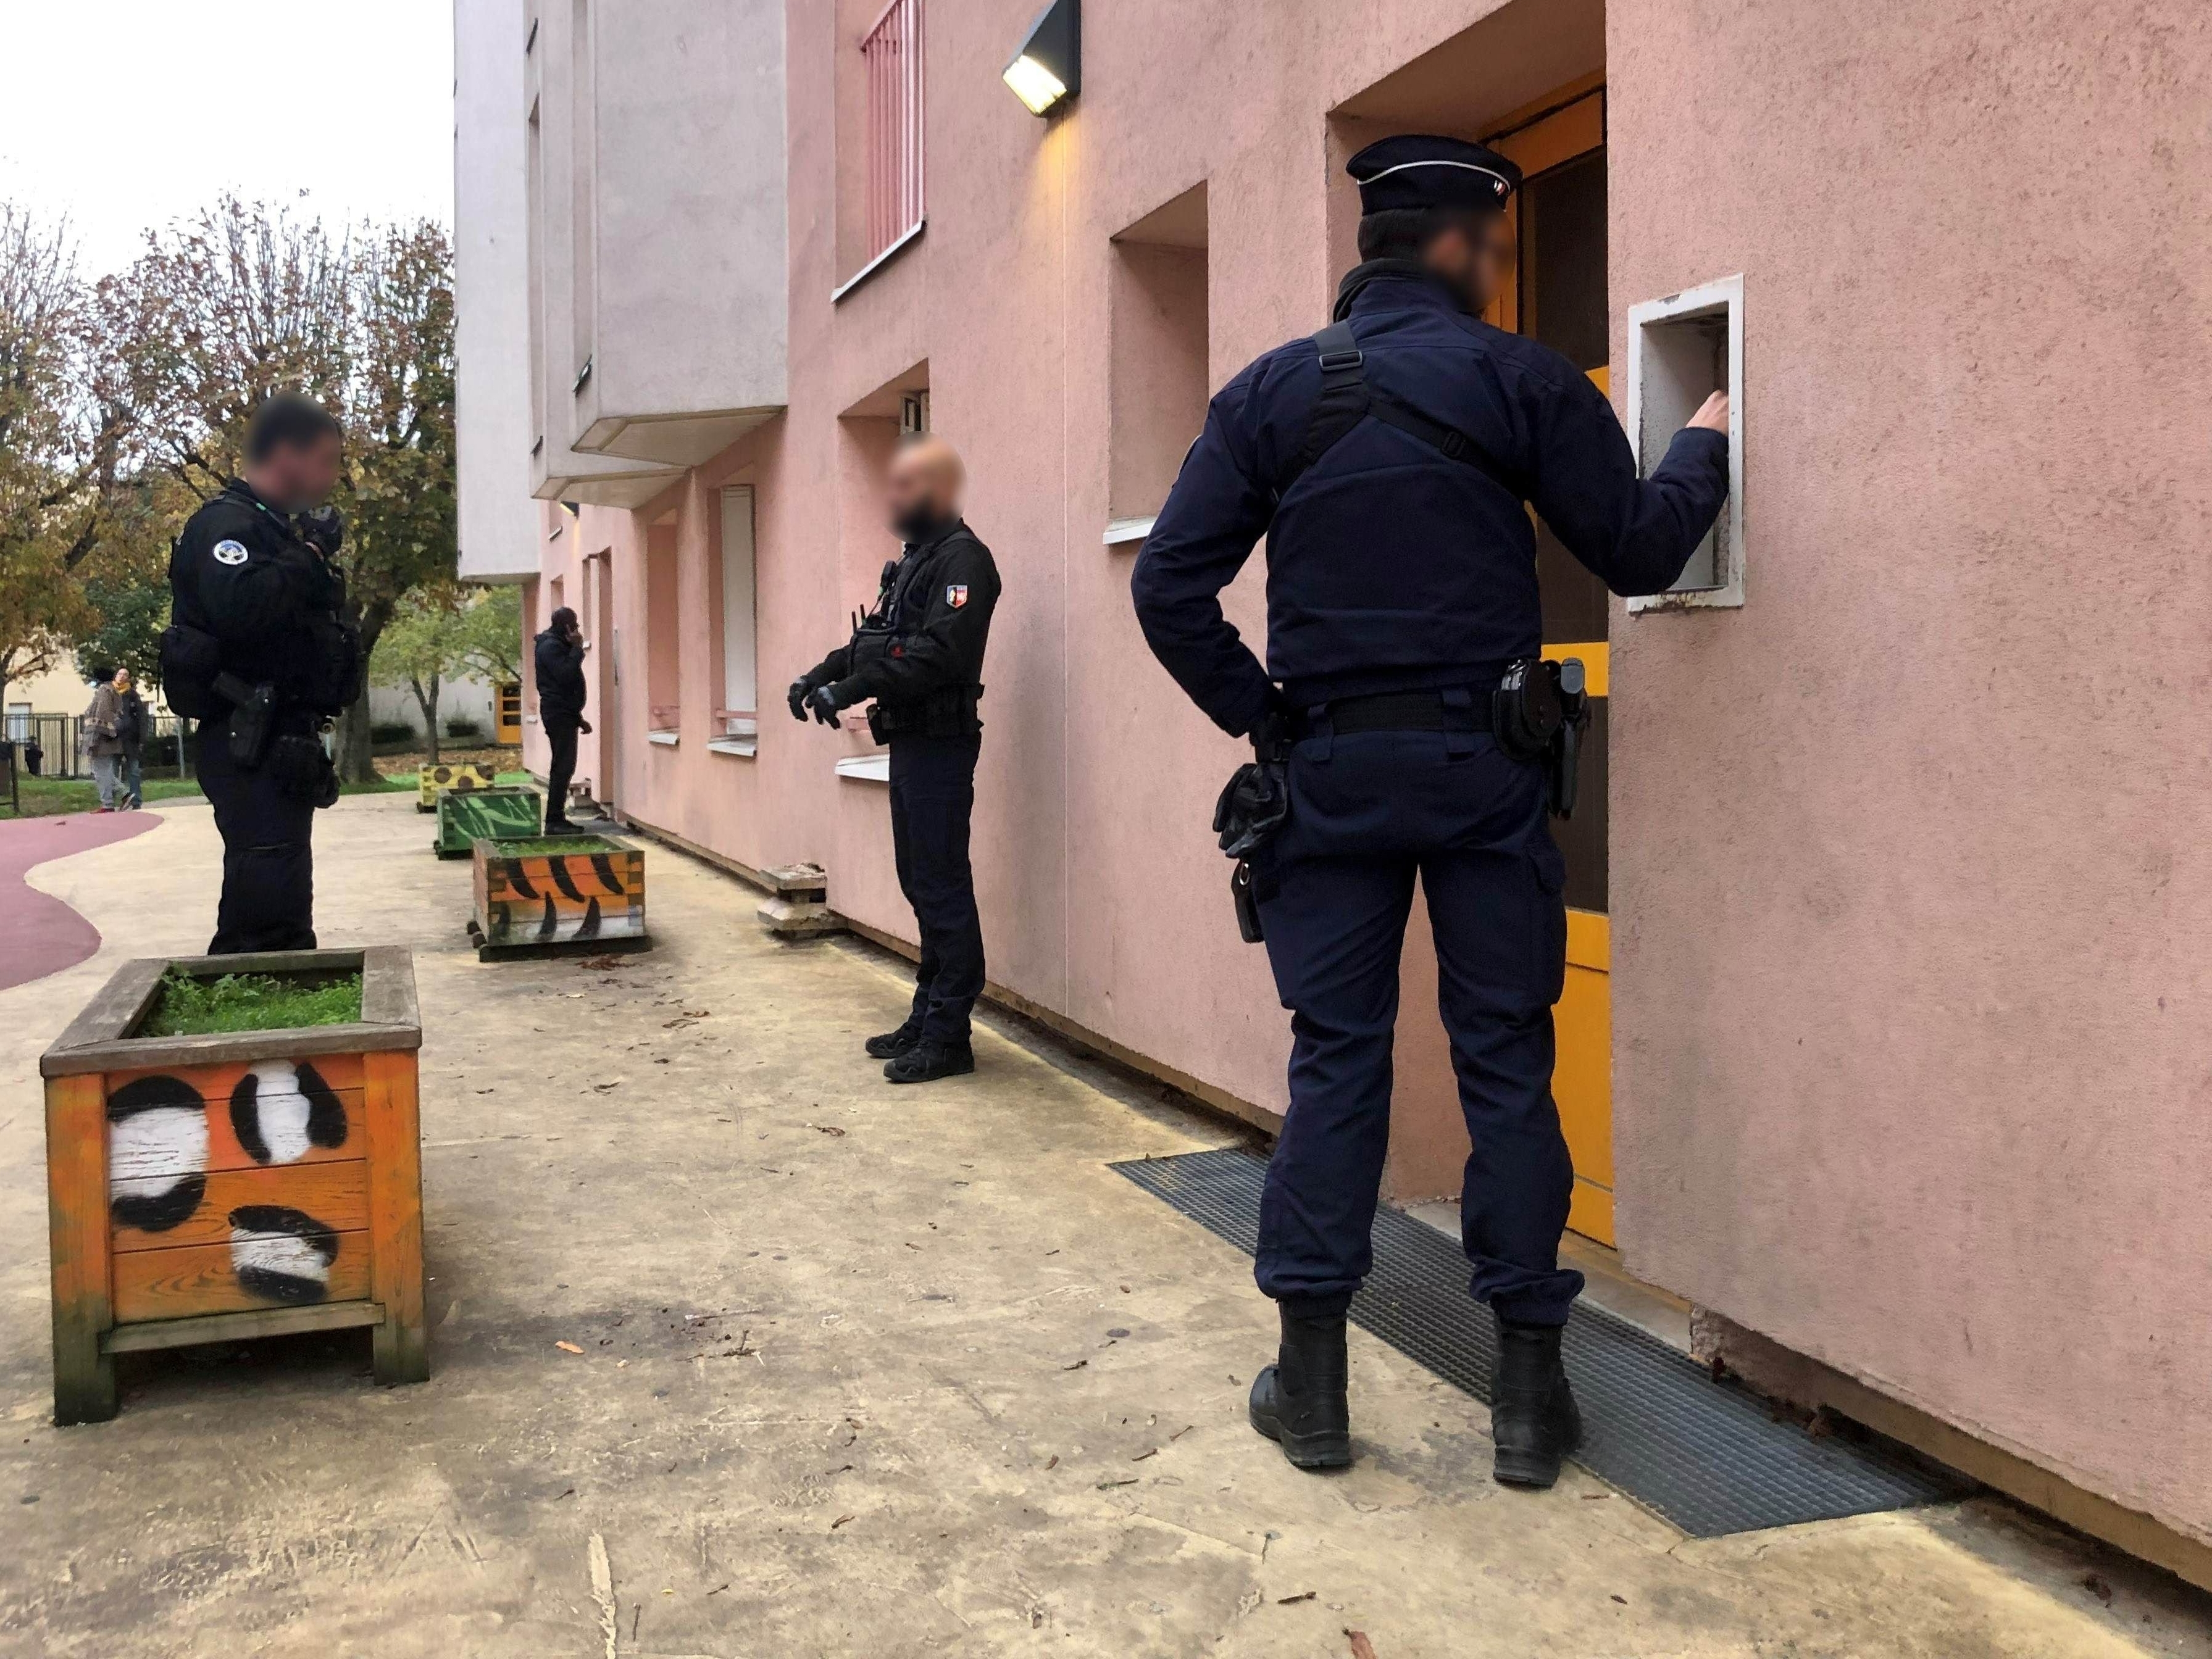 Évry-Courcouronnes (Essonne), ce mercredi 8 novembre. Une vingtaine de policiers ont été mobilisés pour cette opération menée dans le quartier du Canal. LP/Florian Garcia